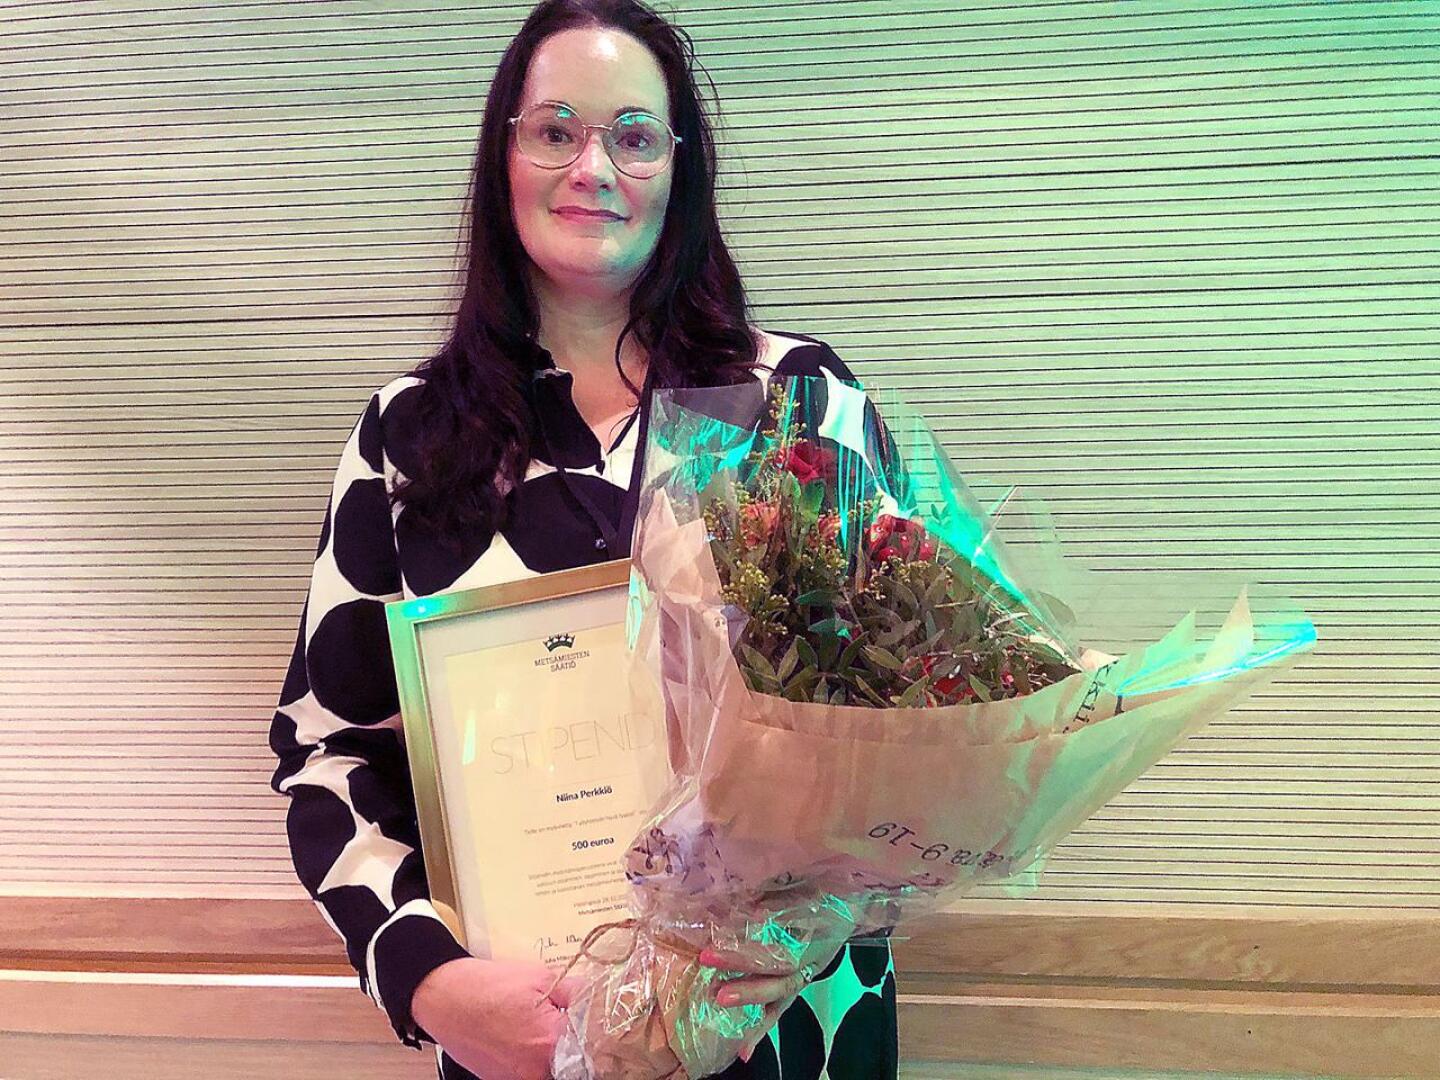 Oulaistelainen Niina Perkkiö sai Työyhteisön hyvä tyyppi -tunnustuksen.